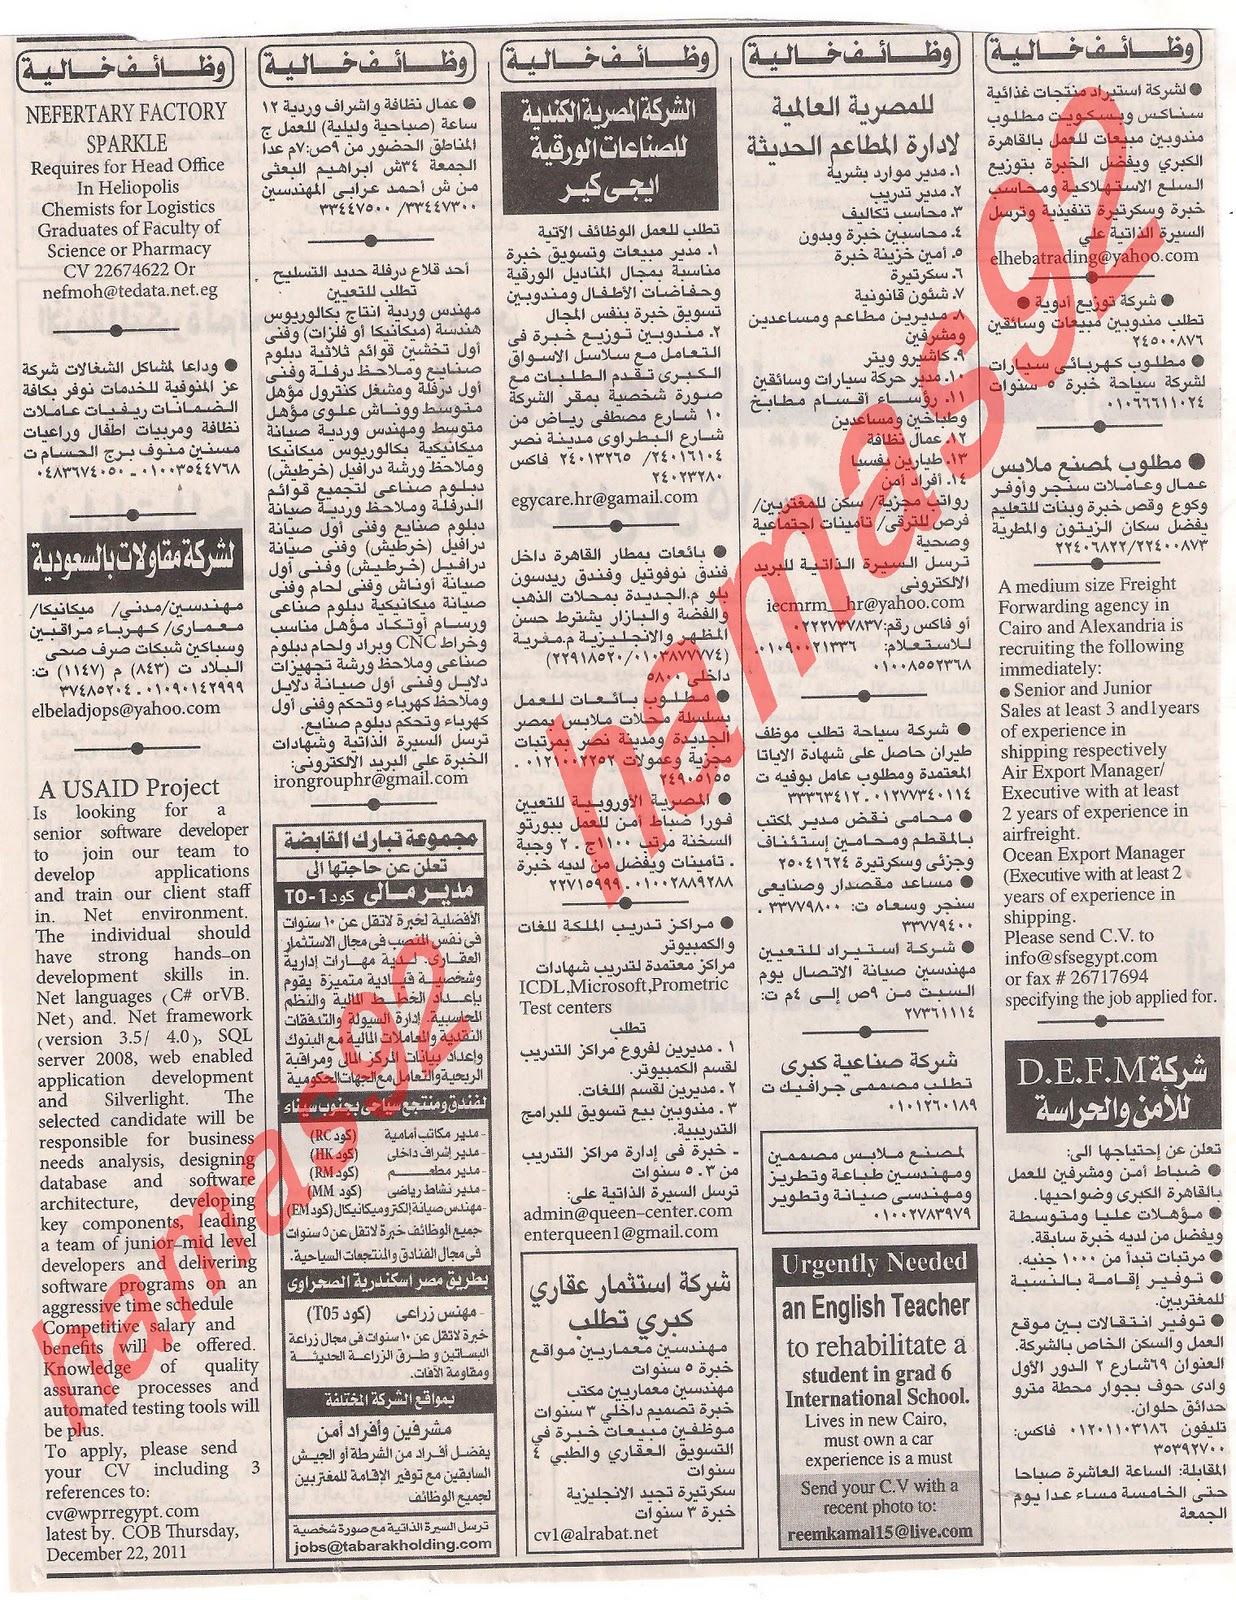 وظائف جريدة الاهرام الجمعة 9  ديسمبر 2011 , الجزء الاول , وظائف اهرام الجمعة 9\12\2011 Picture+001